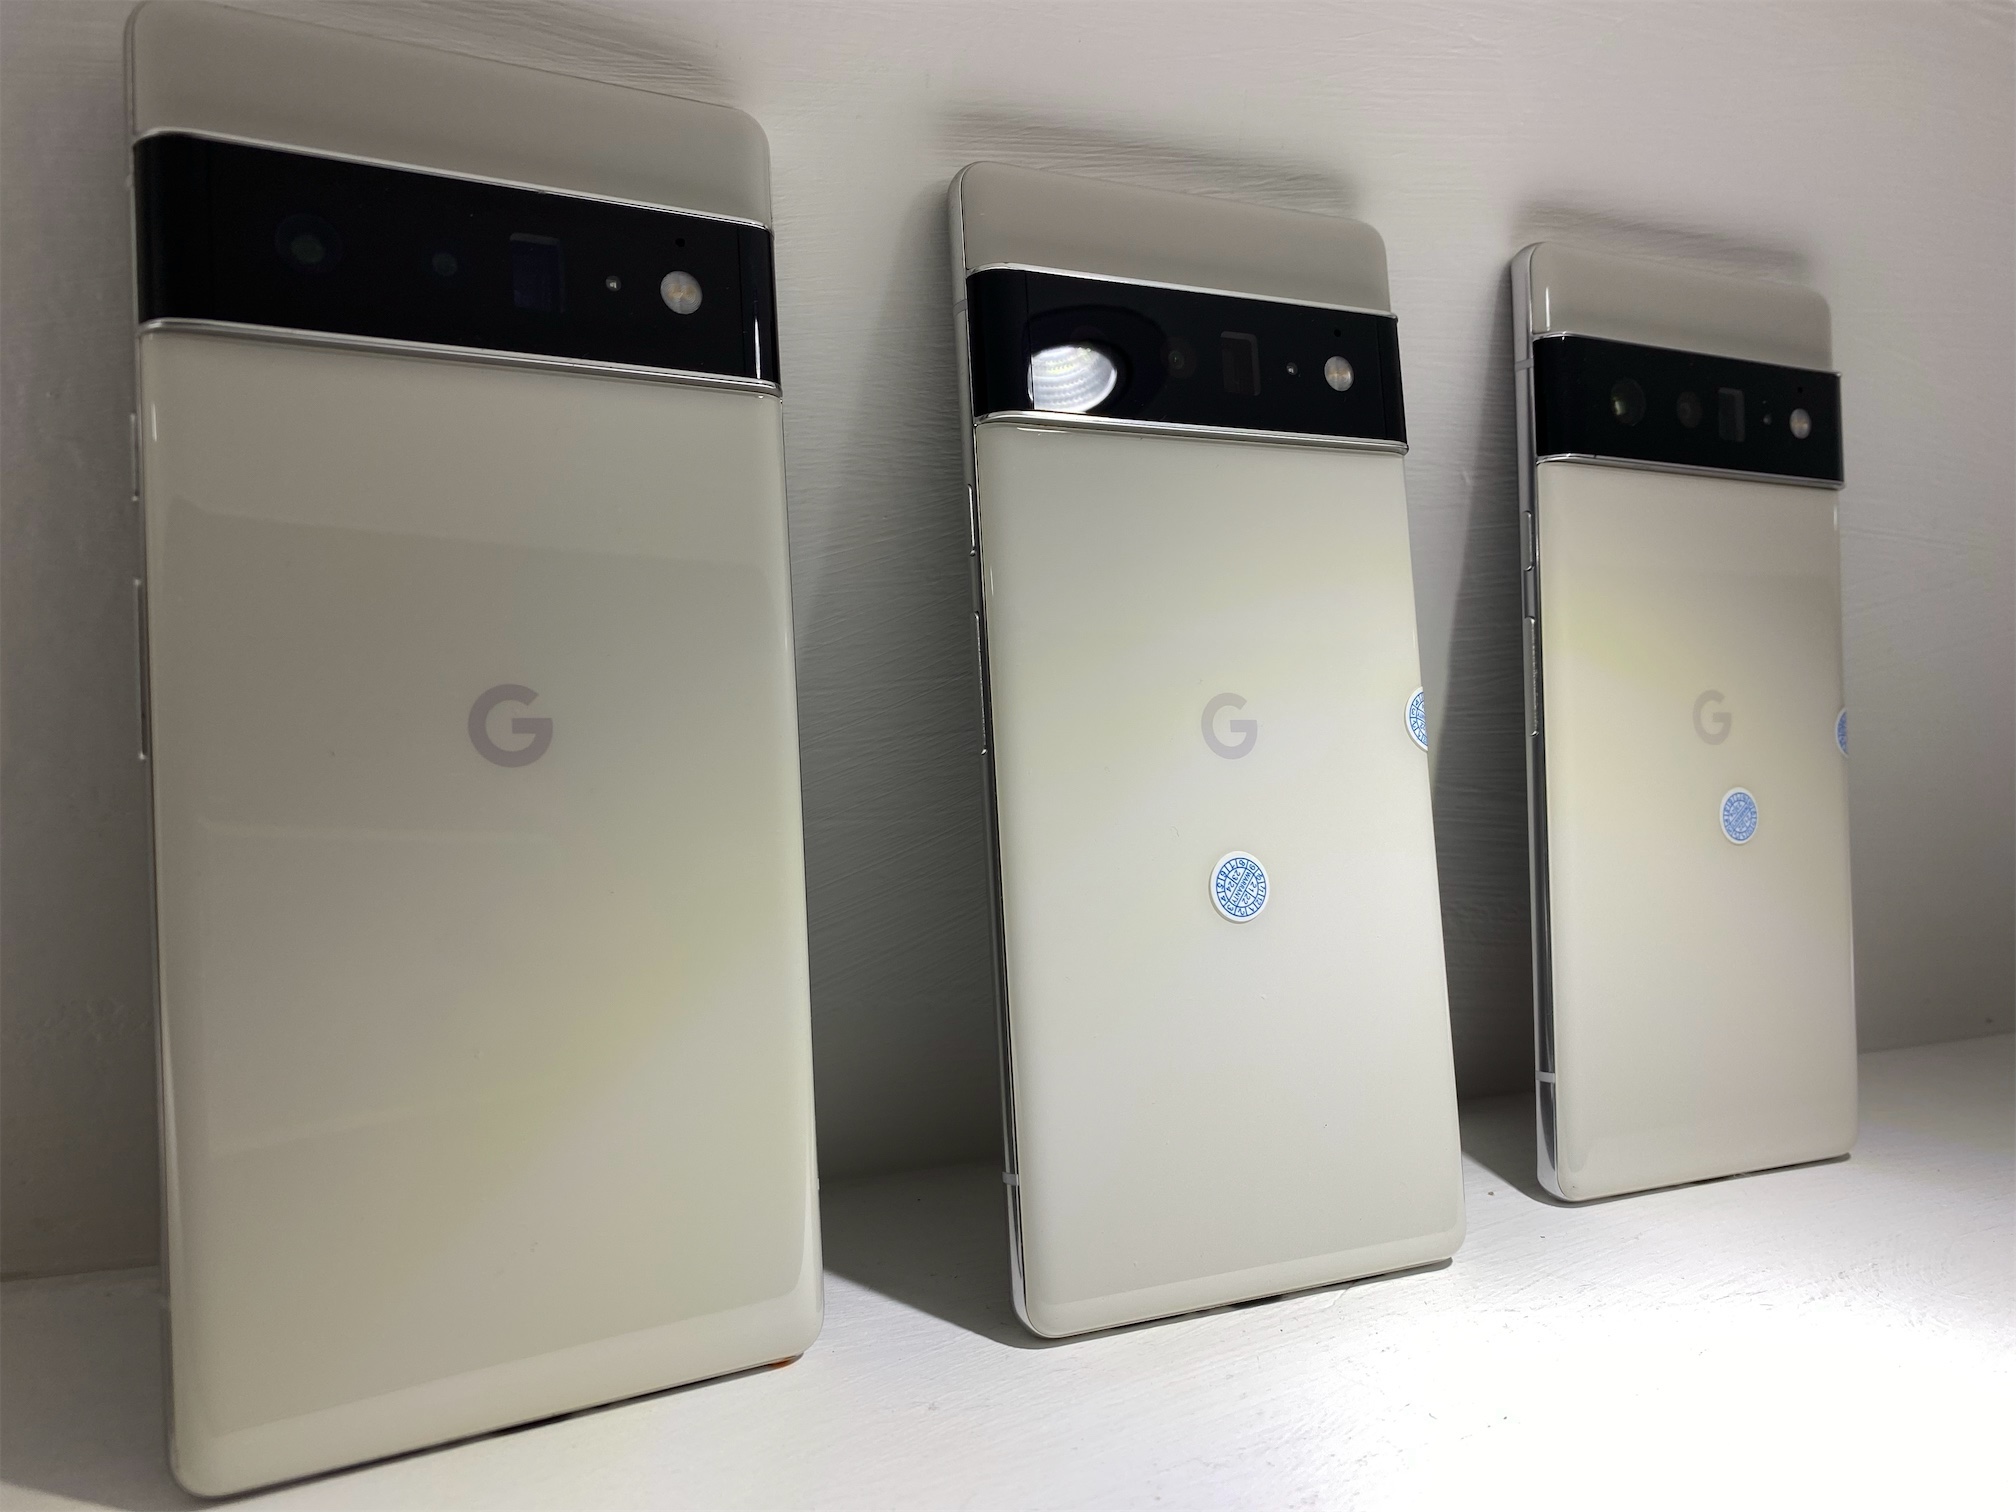 celulares y tabletas - Google 6 pro  0